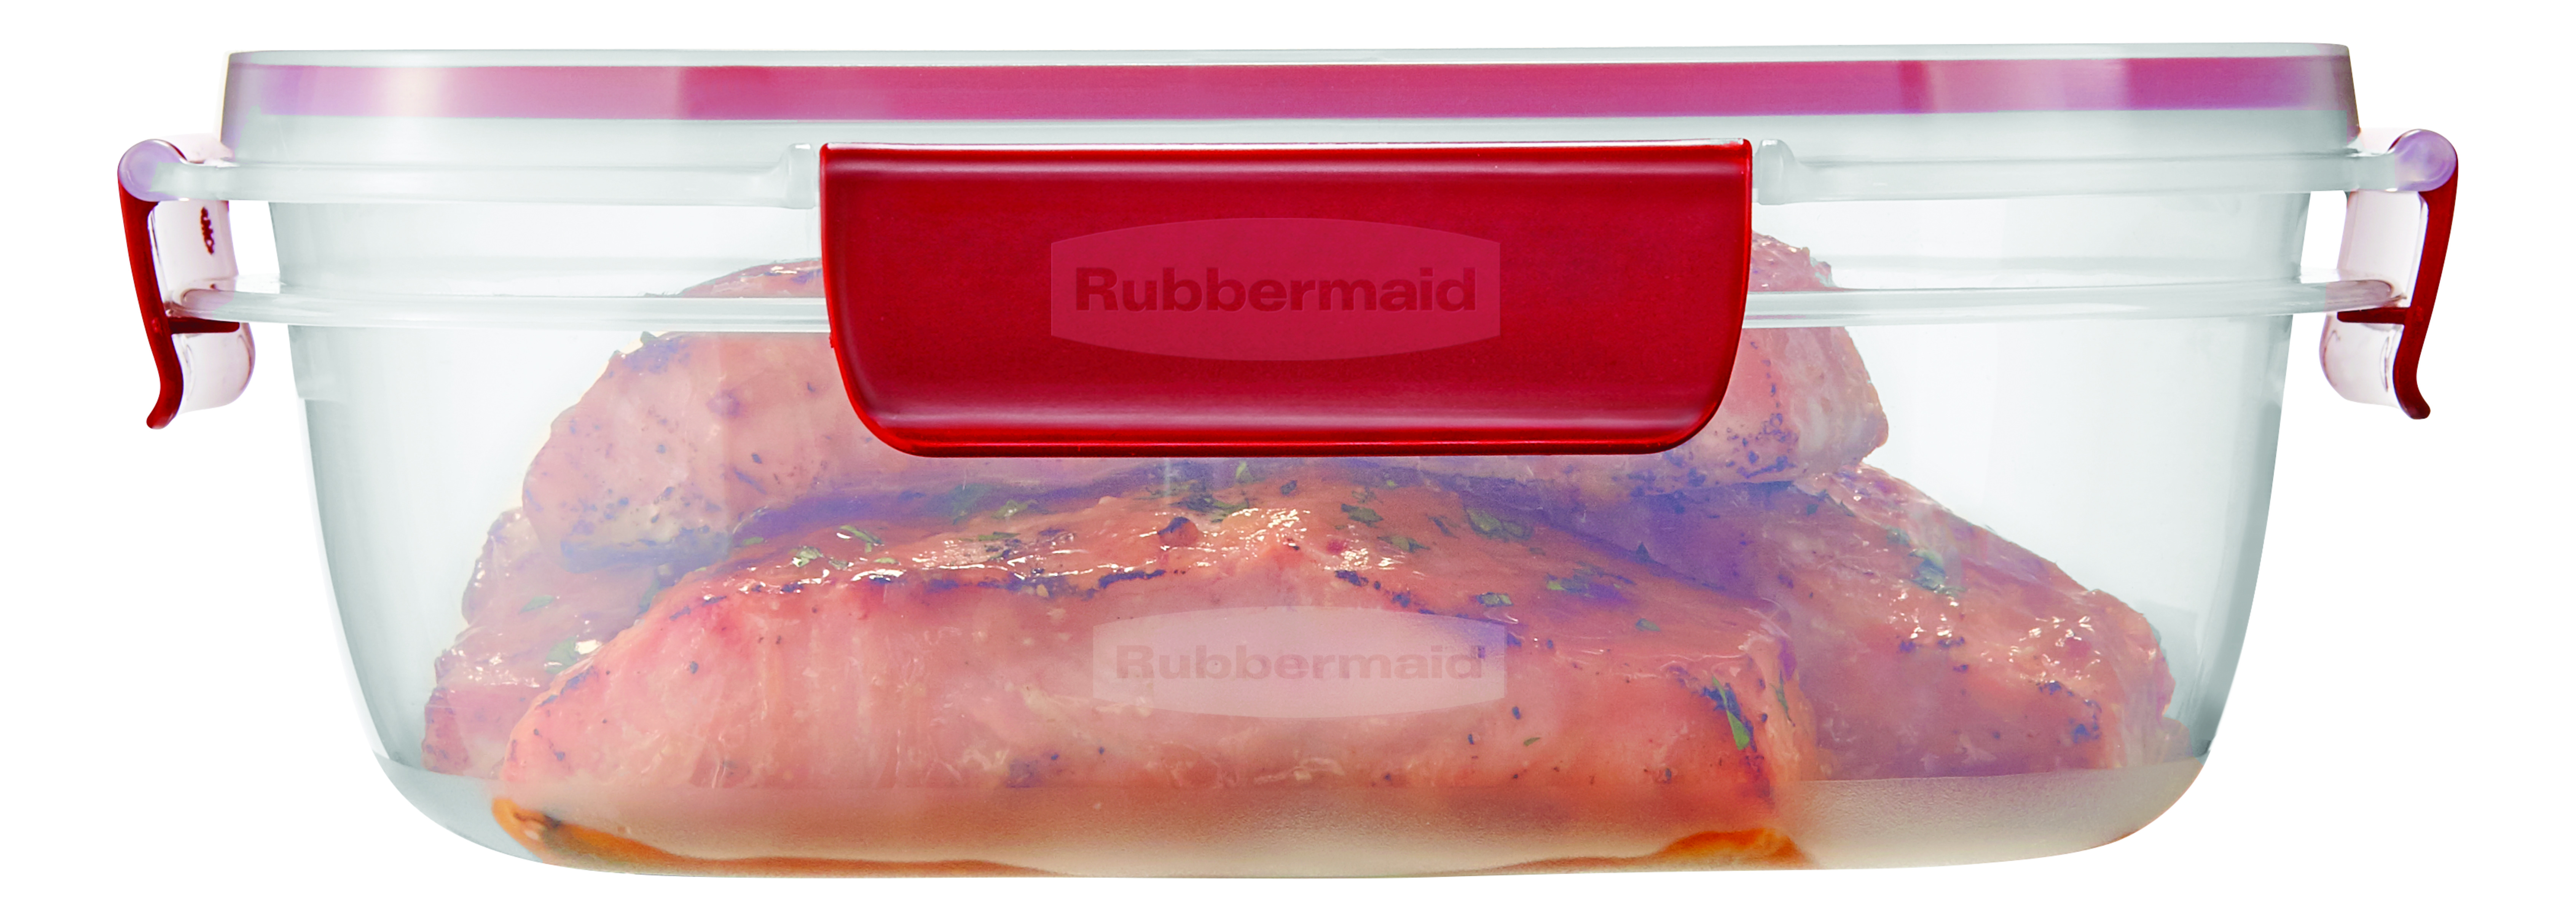 rubbermaid easyfind lid 40 cup